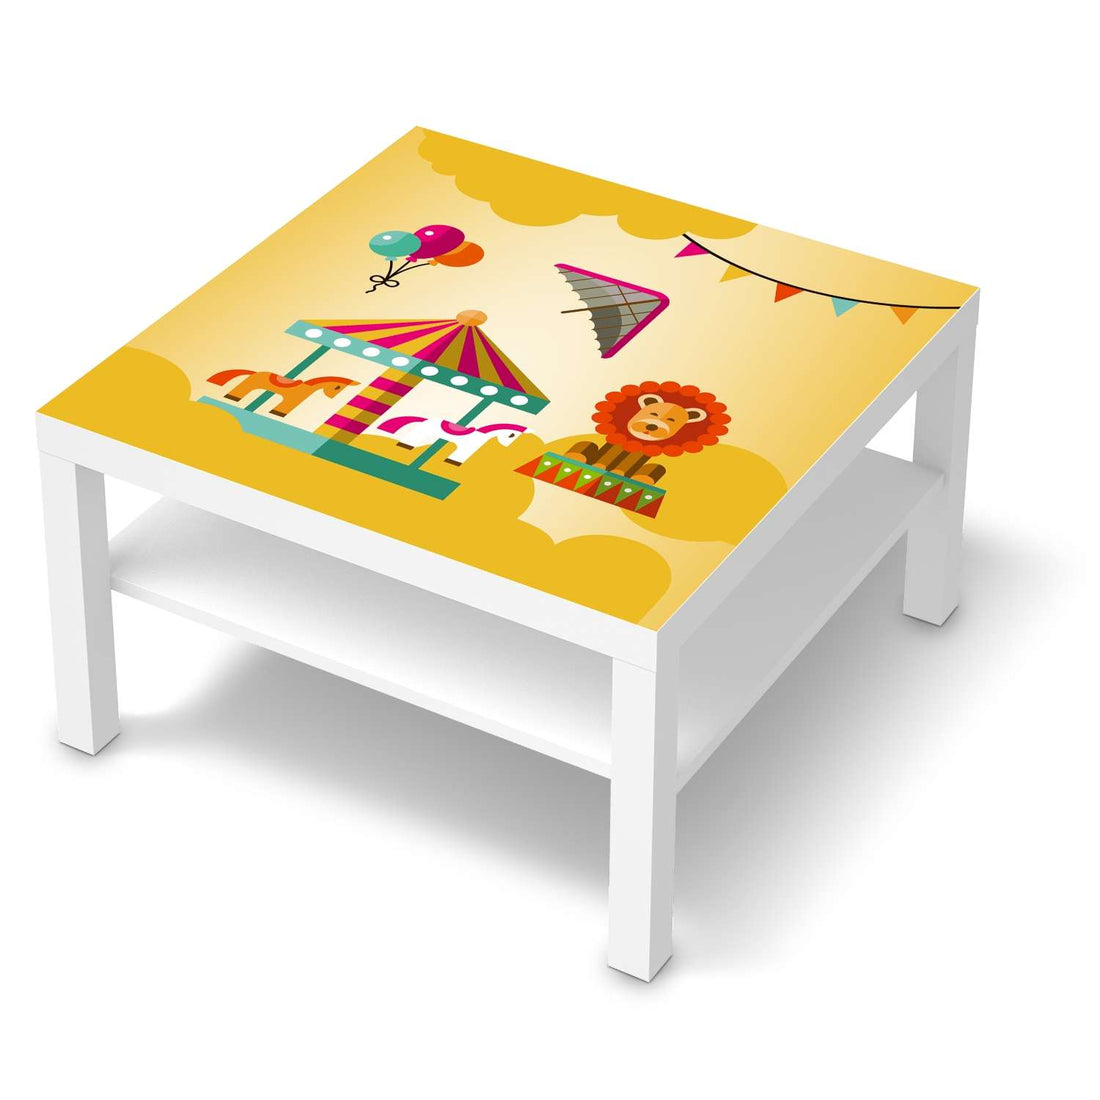 Selbstklebende Folie Löwenstark - IKEA Lack Tisch 78x78 cm - weiss